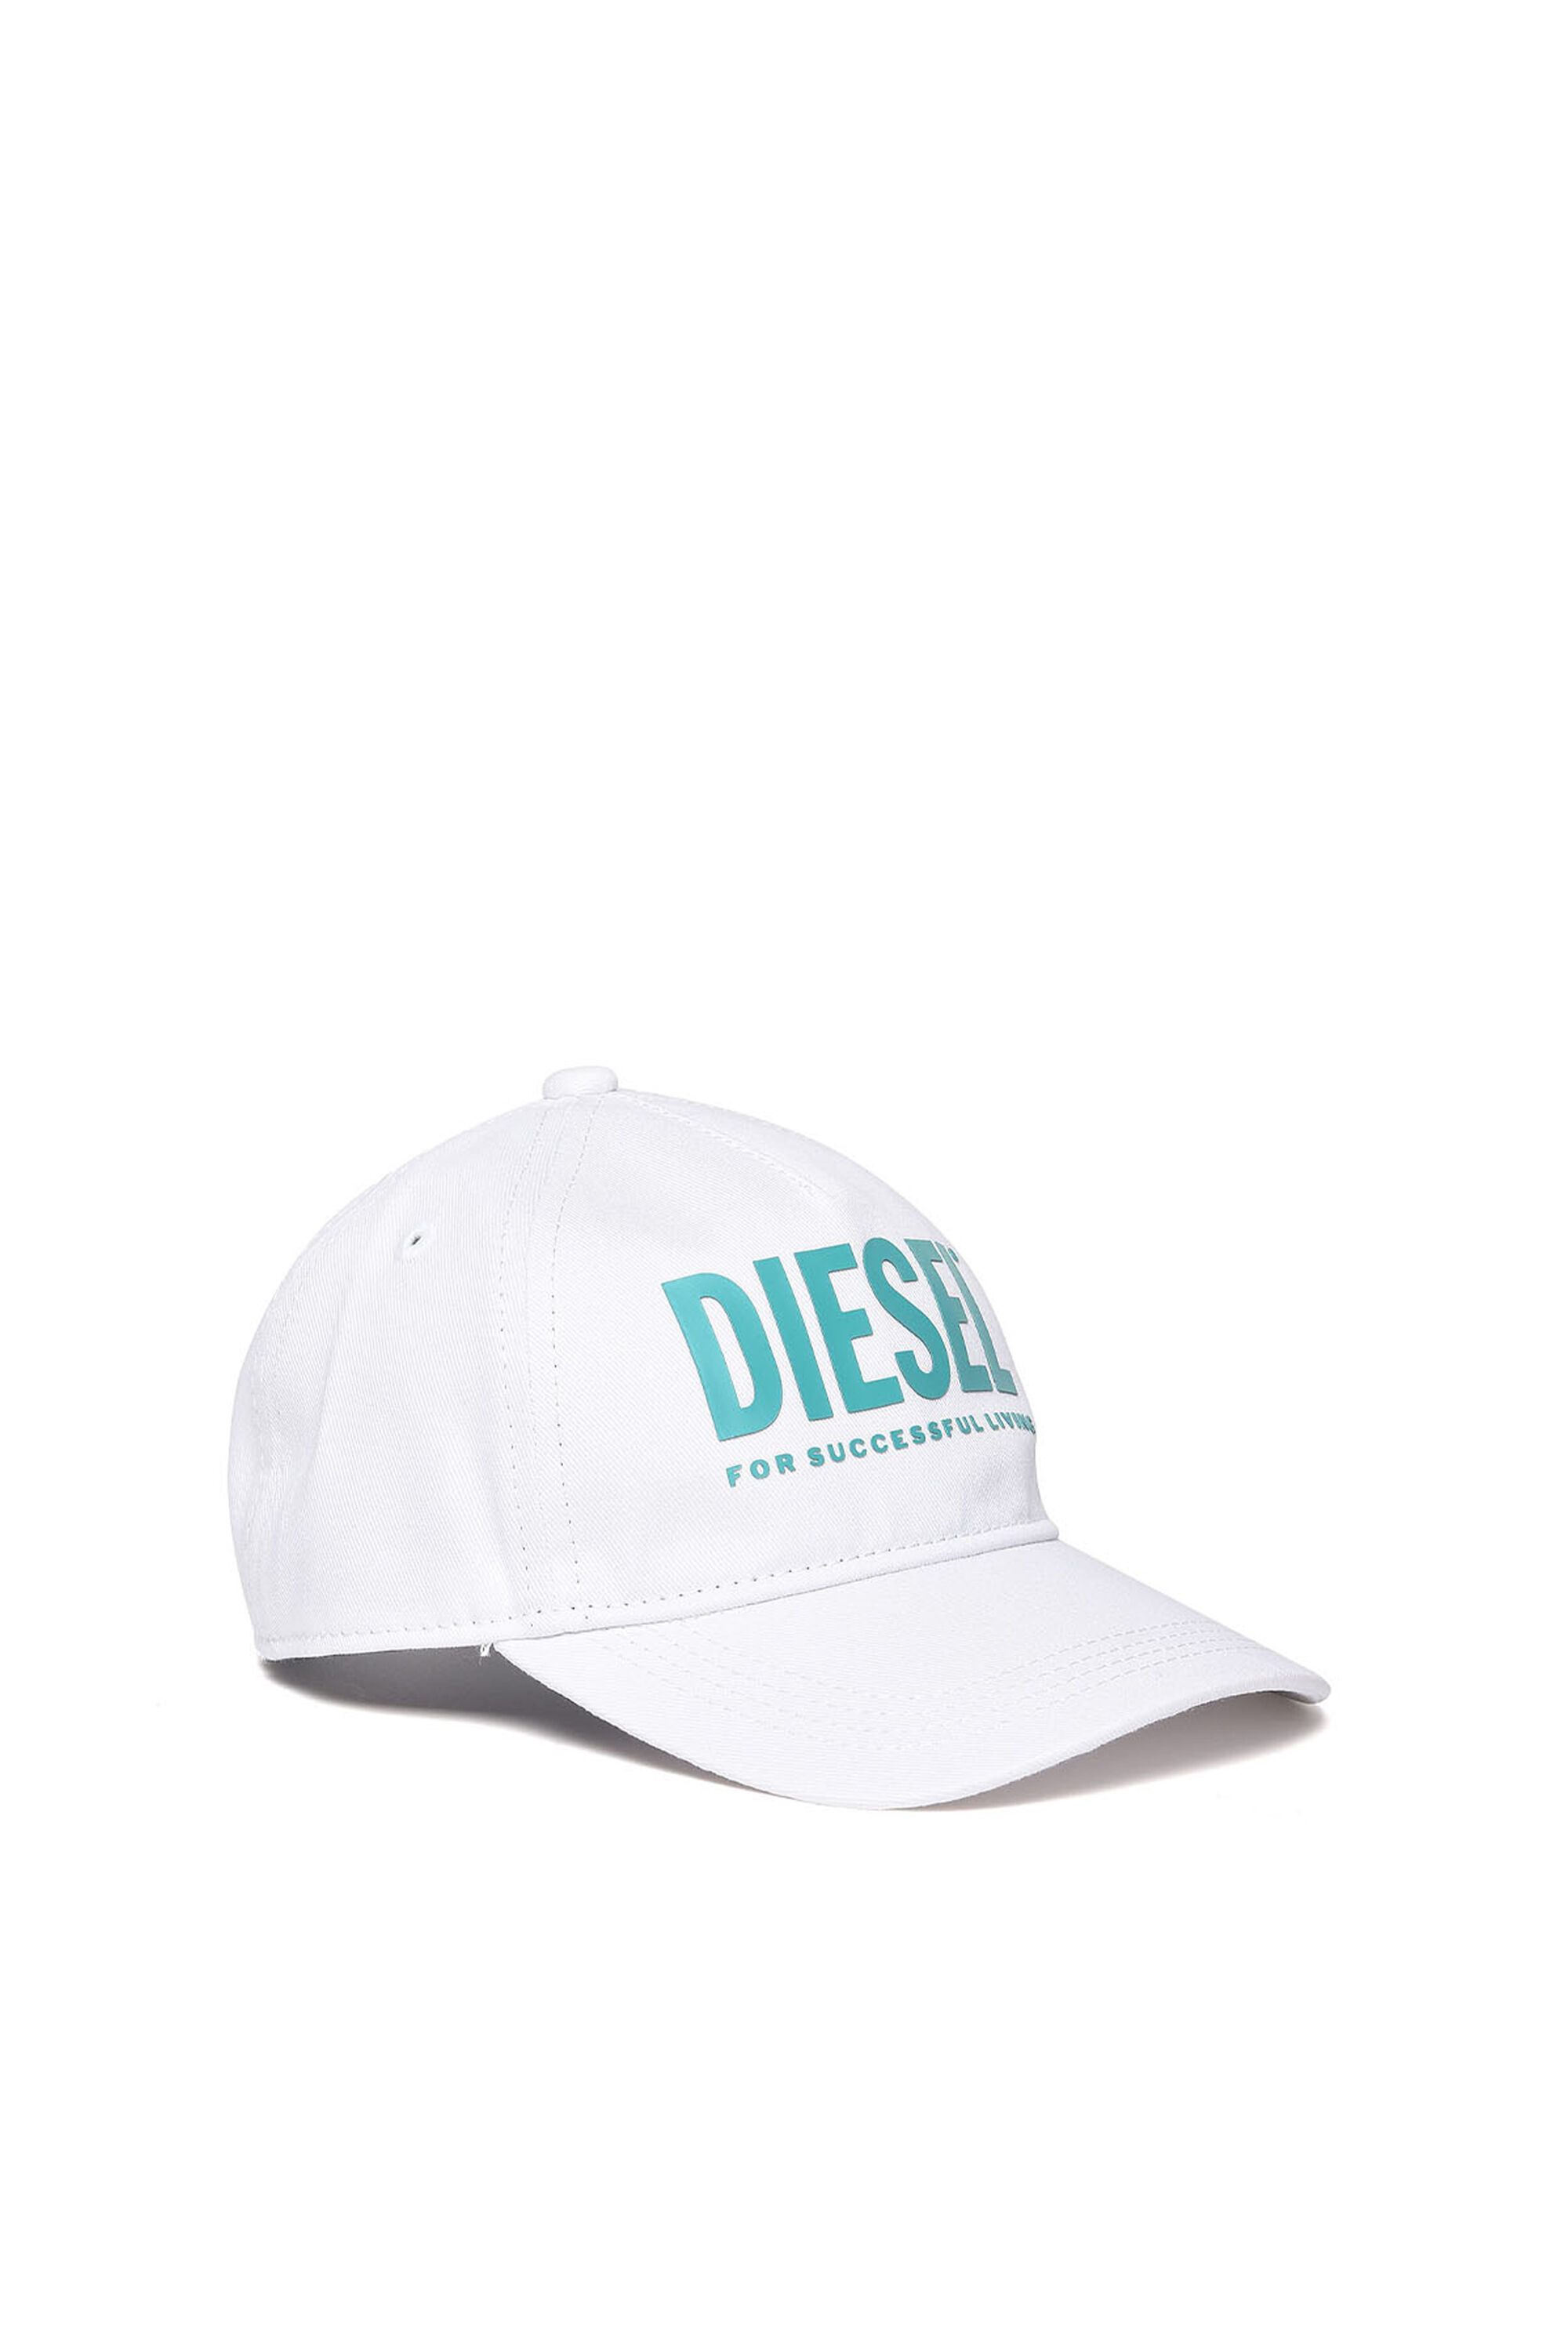 Diesel - FTOLLYB, Blanco - Image 1